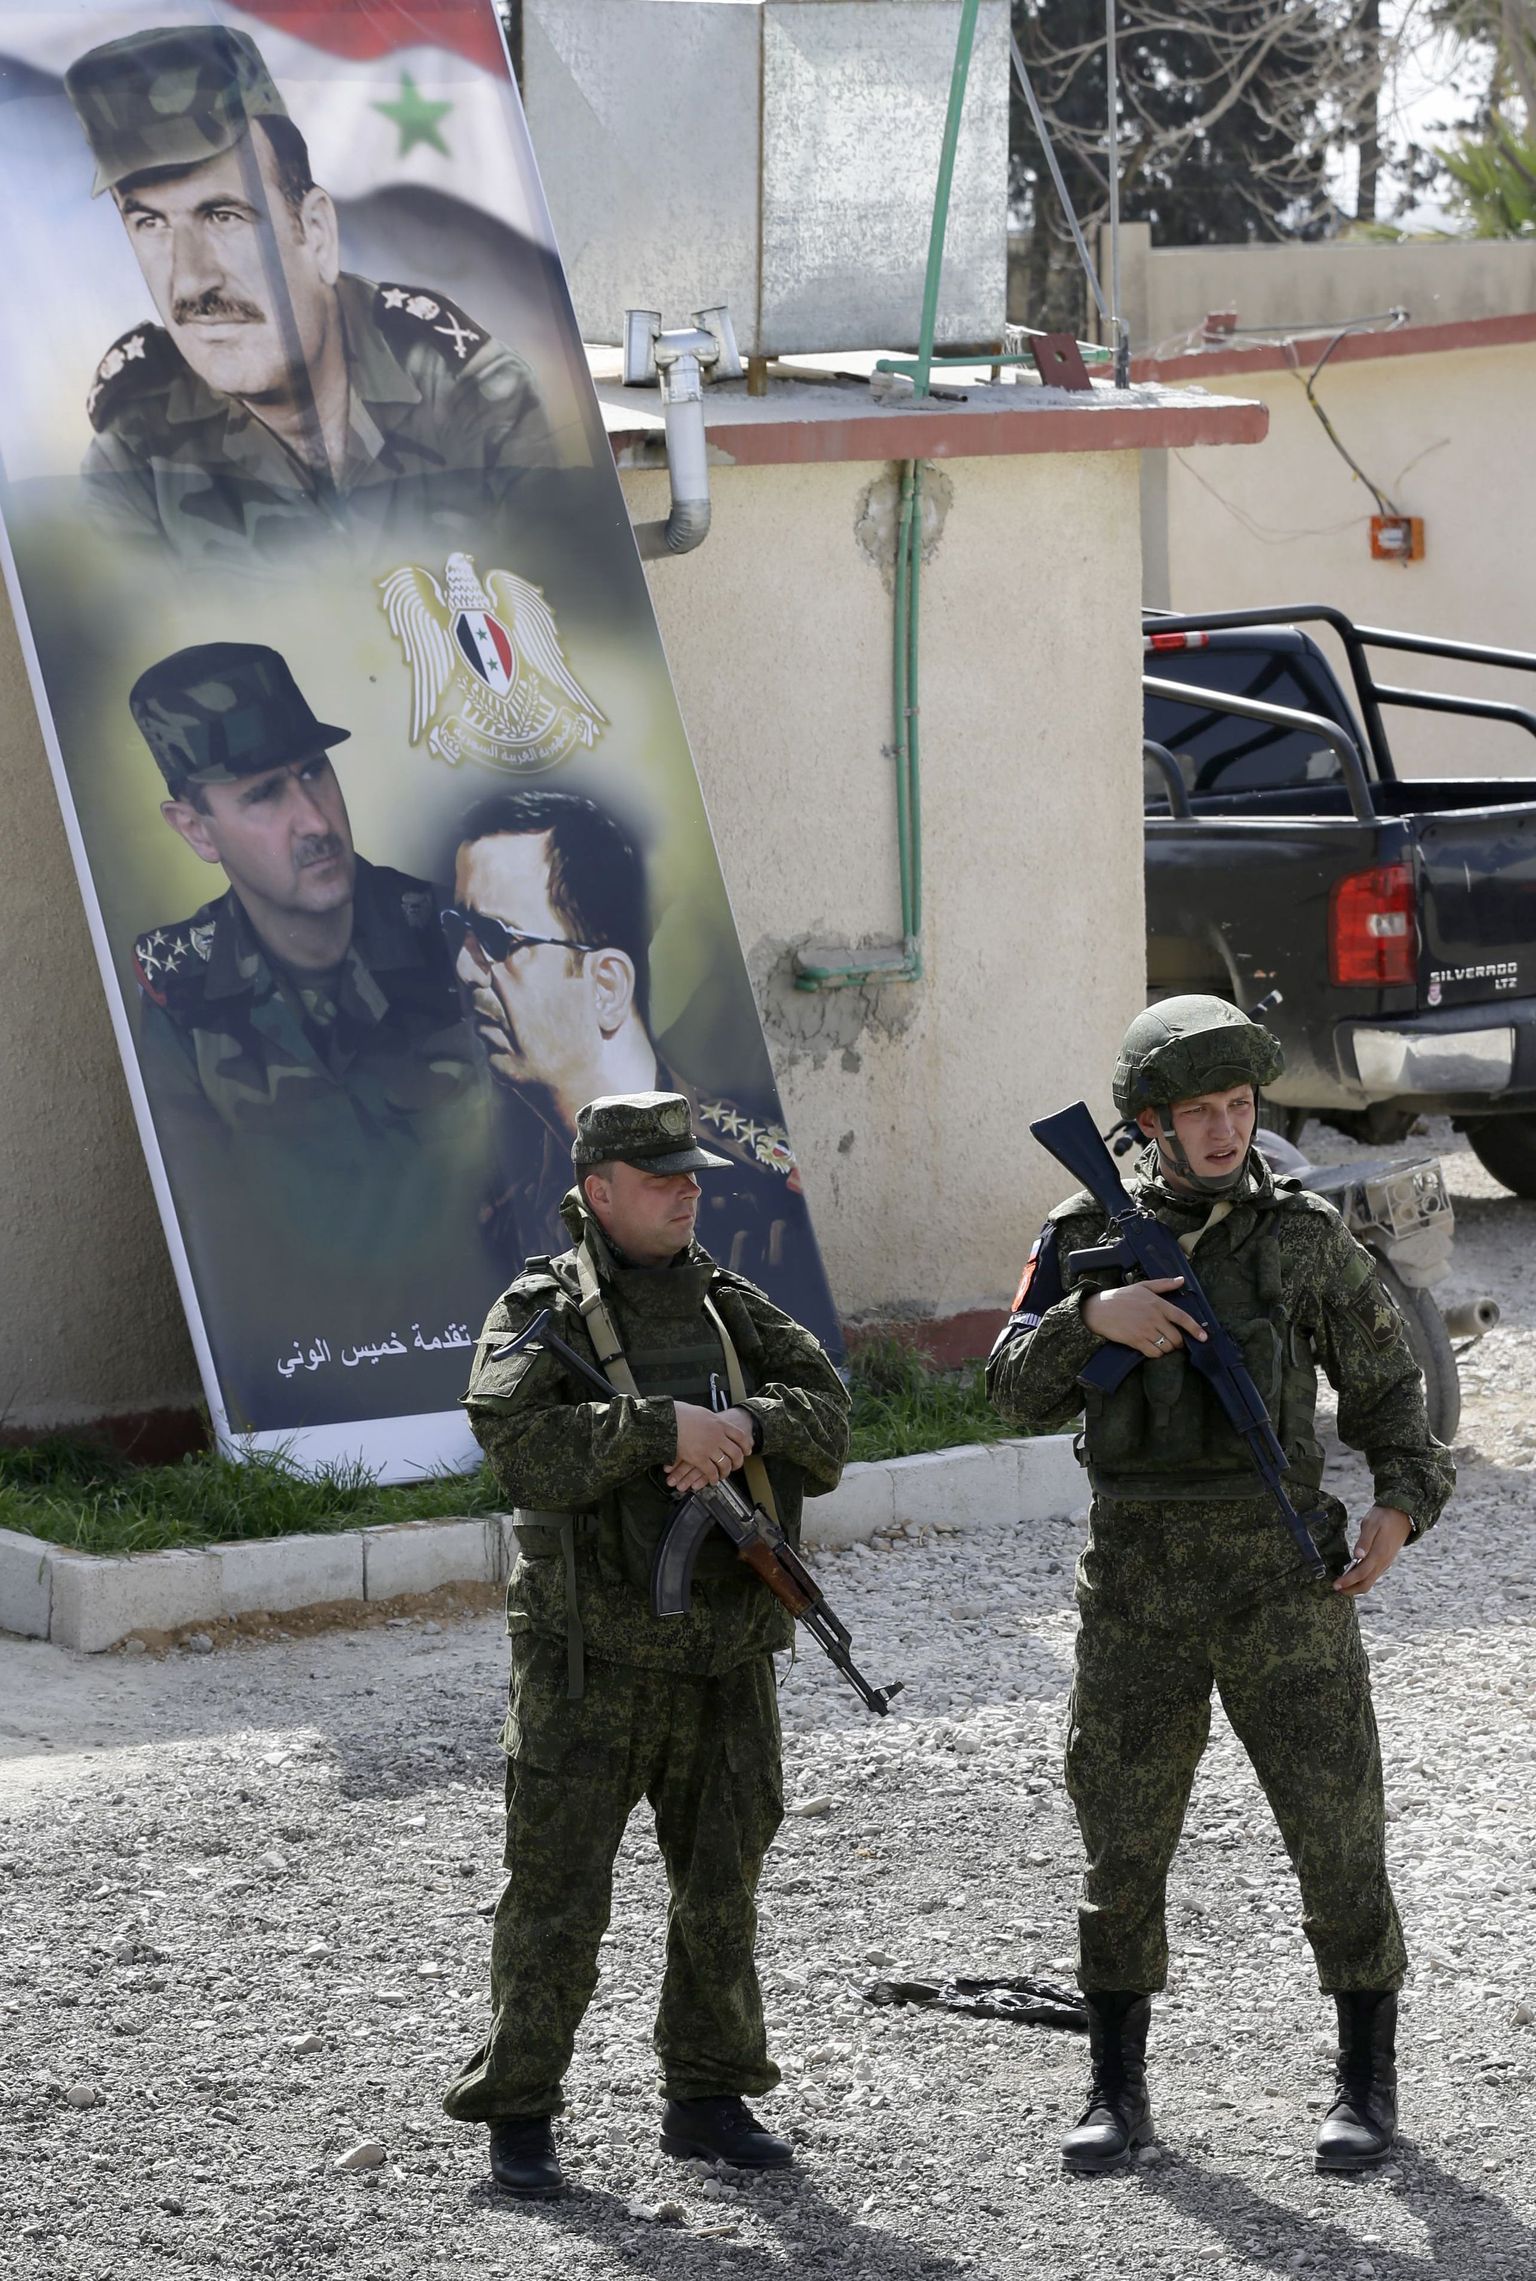 Vene sõdurid Damascuse eeslinnas Bashar Assadi pildi taustal.